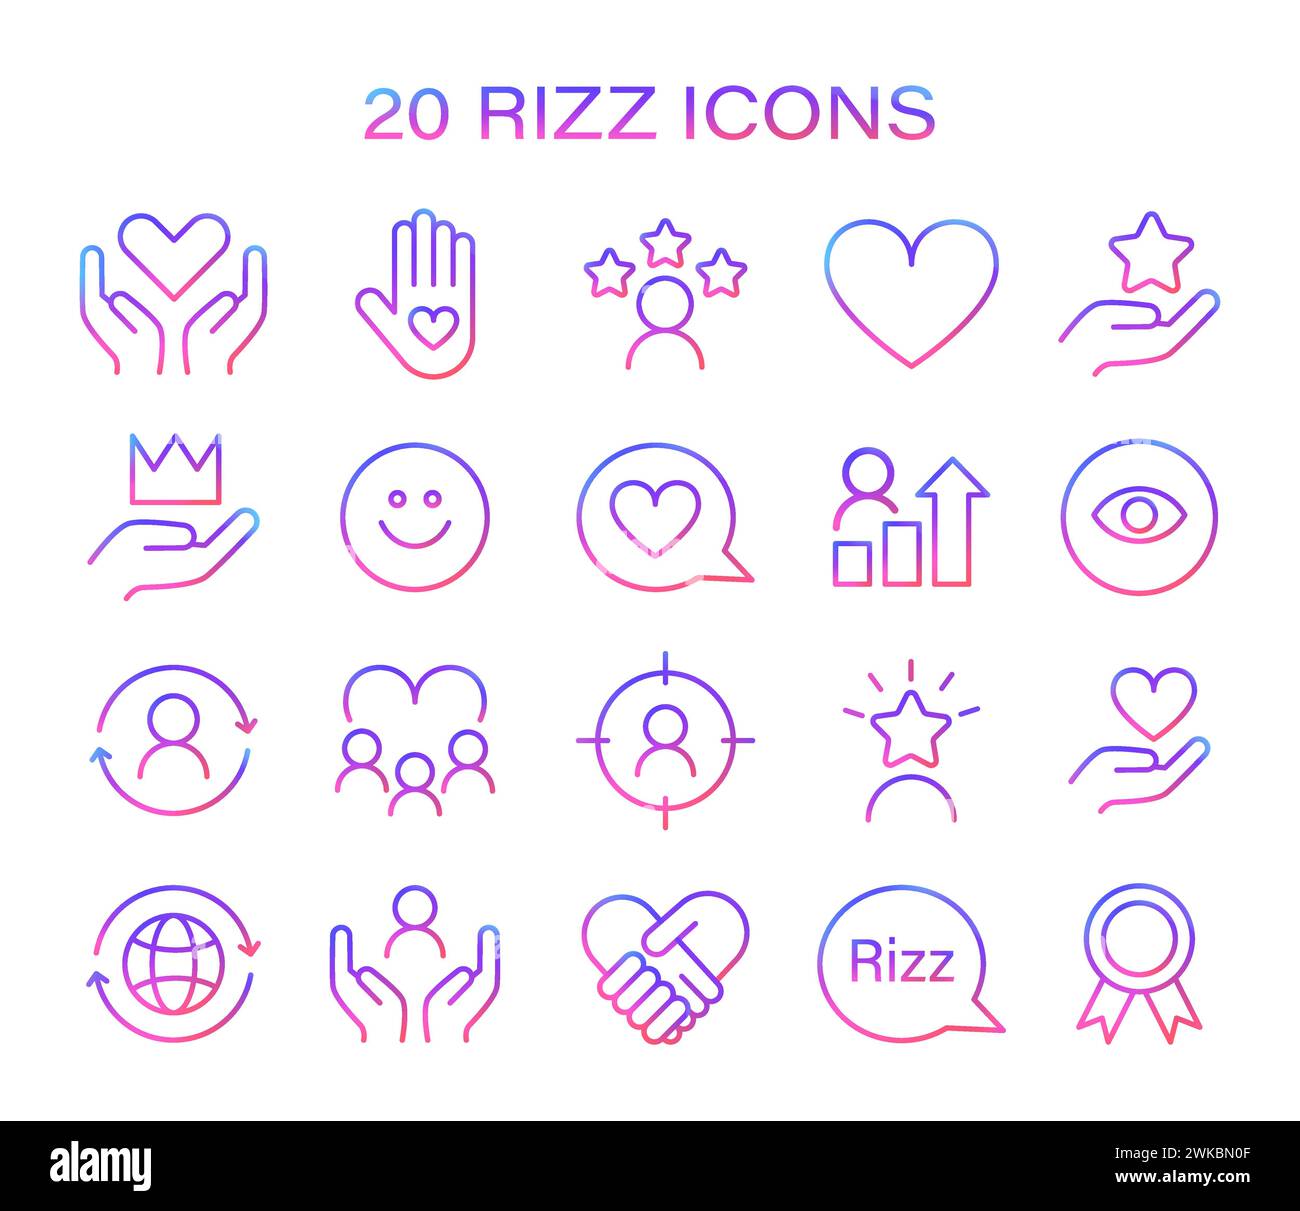 Set di icone Rizz. Icone minimaliste che rappresentano vari aspetti dell'interazione sociale e della crescita personale. Simboli di cura, successo e visione. Illustrazione vettoriale. Illustrazione Vettoriale